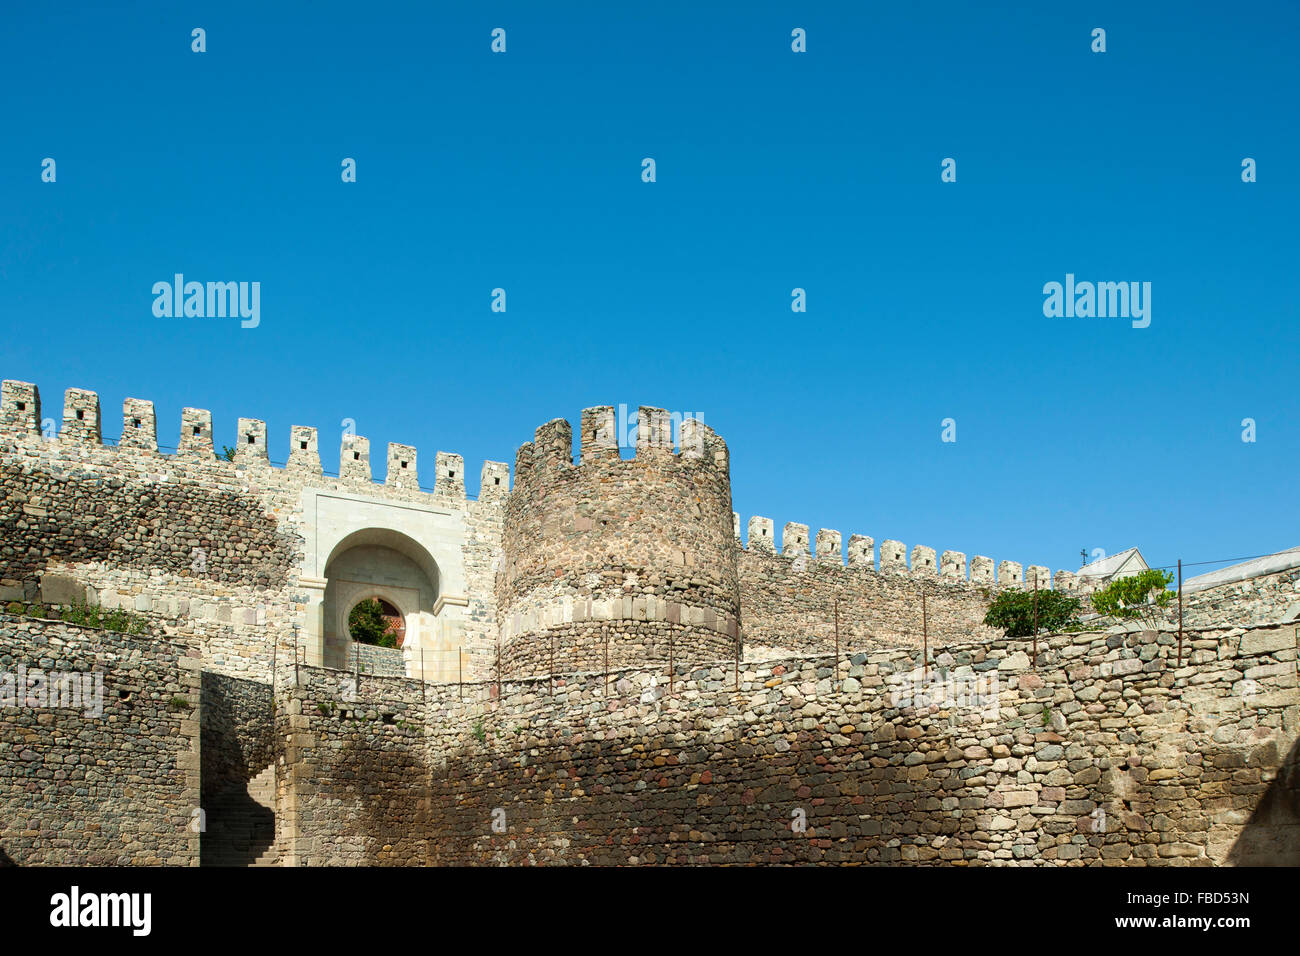 Georgien, Samtskhe-Javakheti, Achalziche, mittelalterliche Festung Rabat Stock Photo